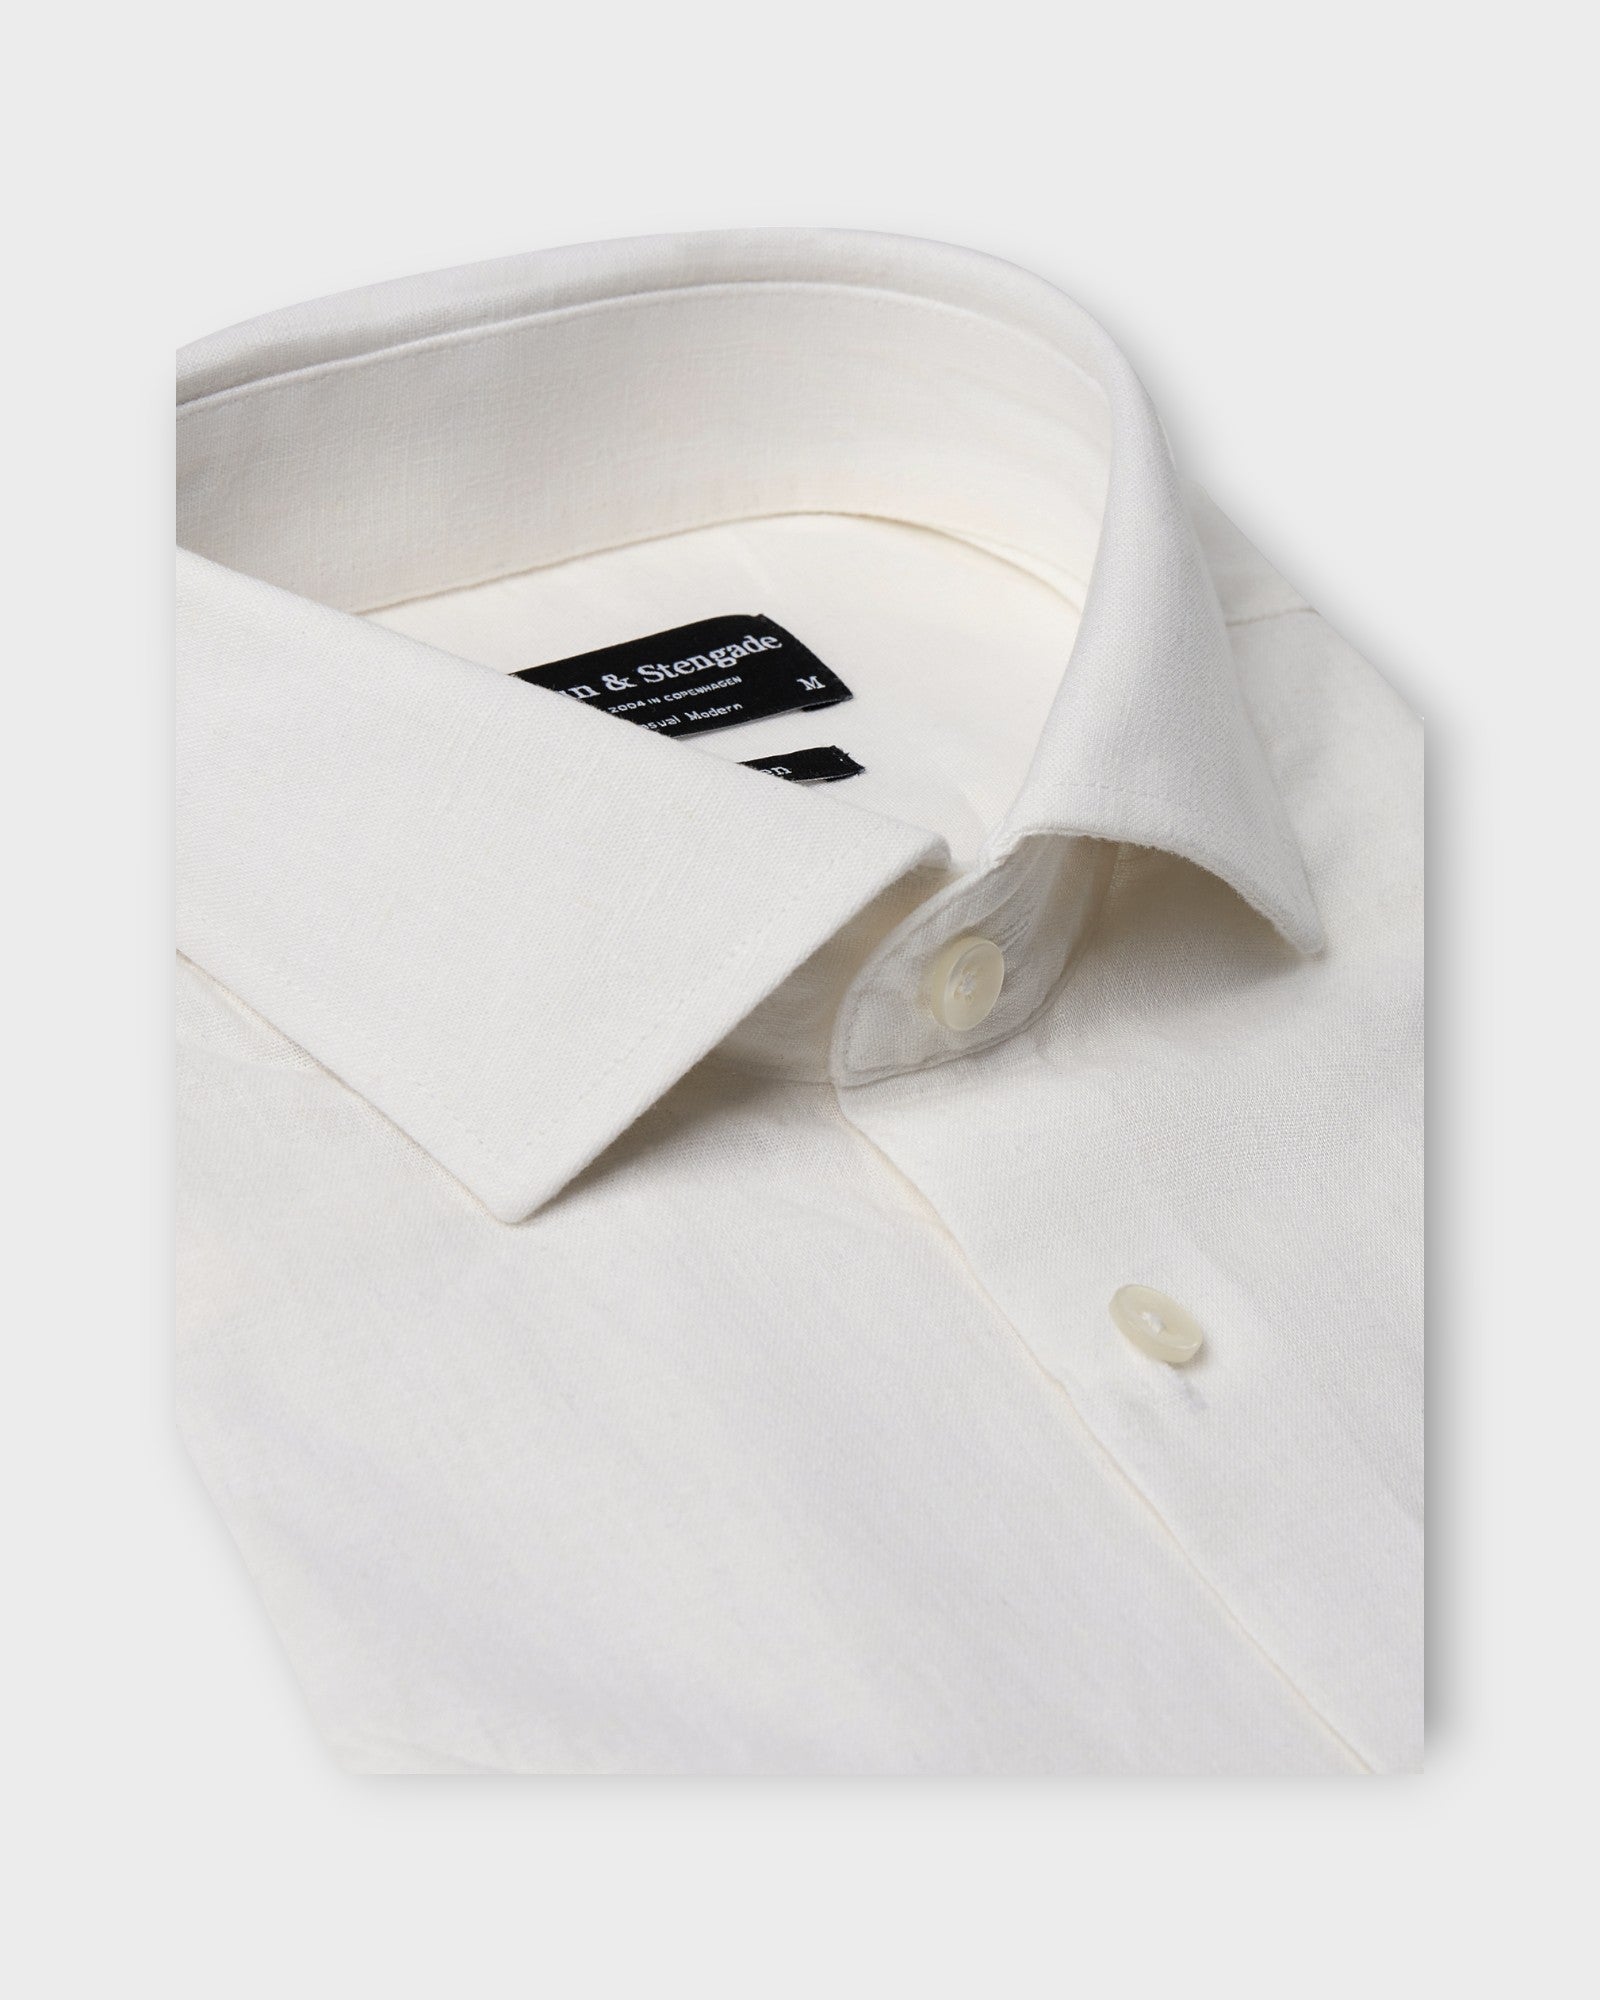 Lott Casual Modern Fit SS Shirt White fra Bruun og Stengade. Kortærmet hvid hørskjorte til mænd. Her set bagfra.